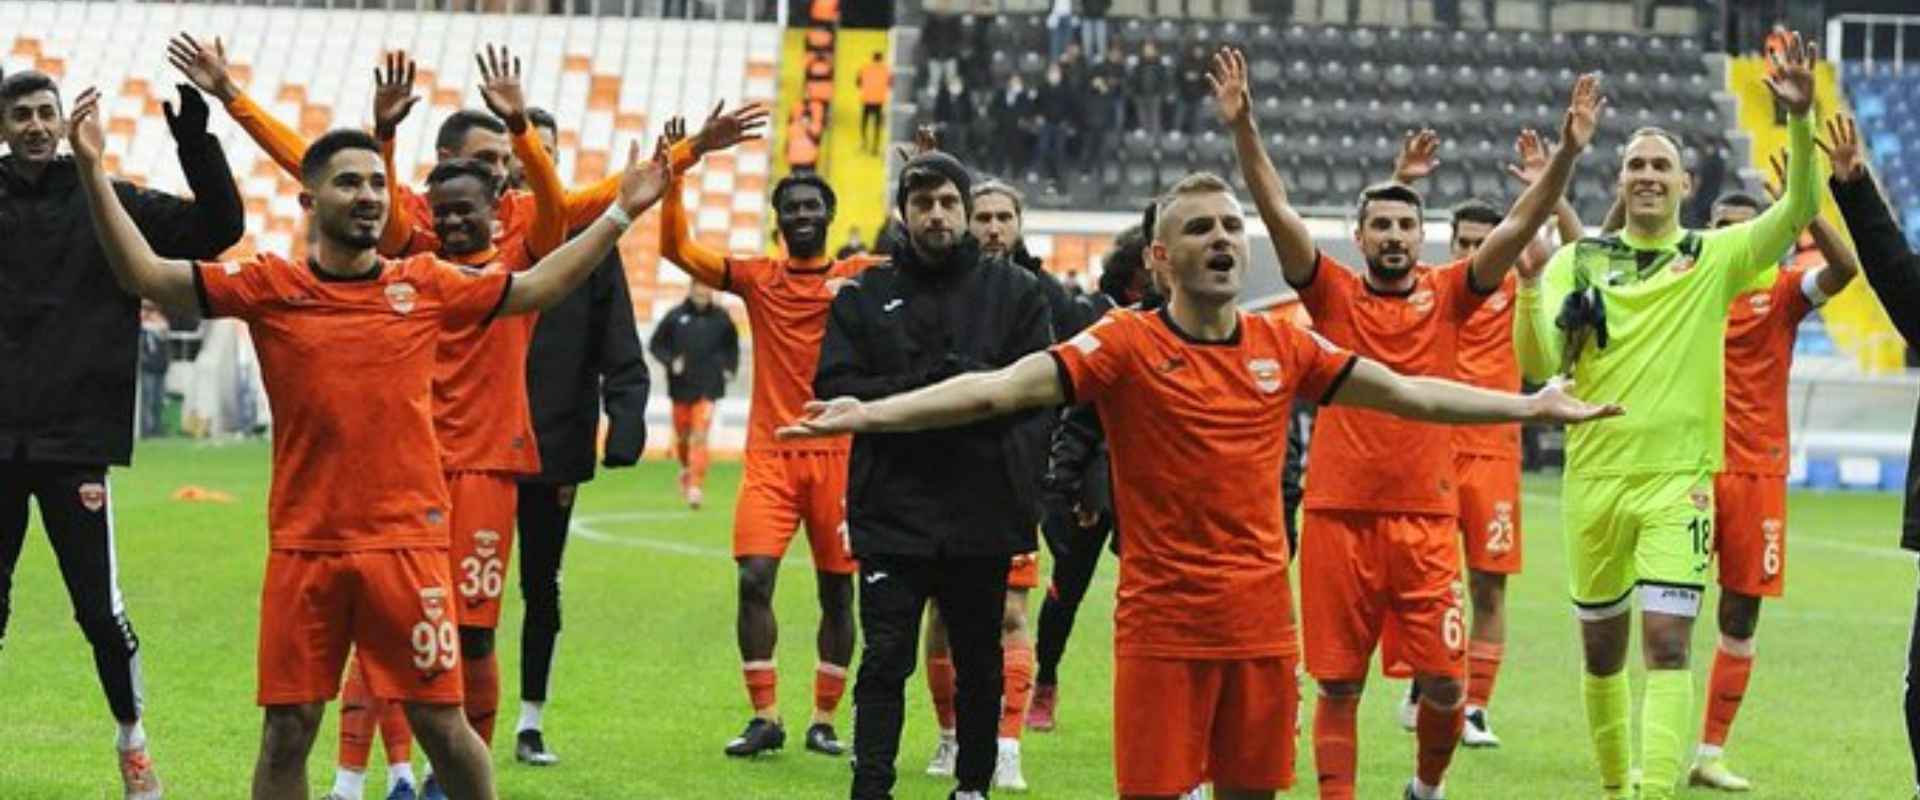 Adanaspor'umuz 2-0 Kocaelispor